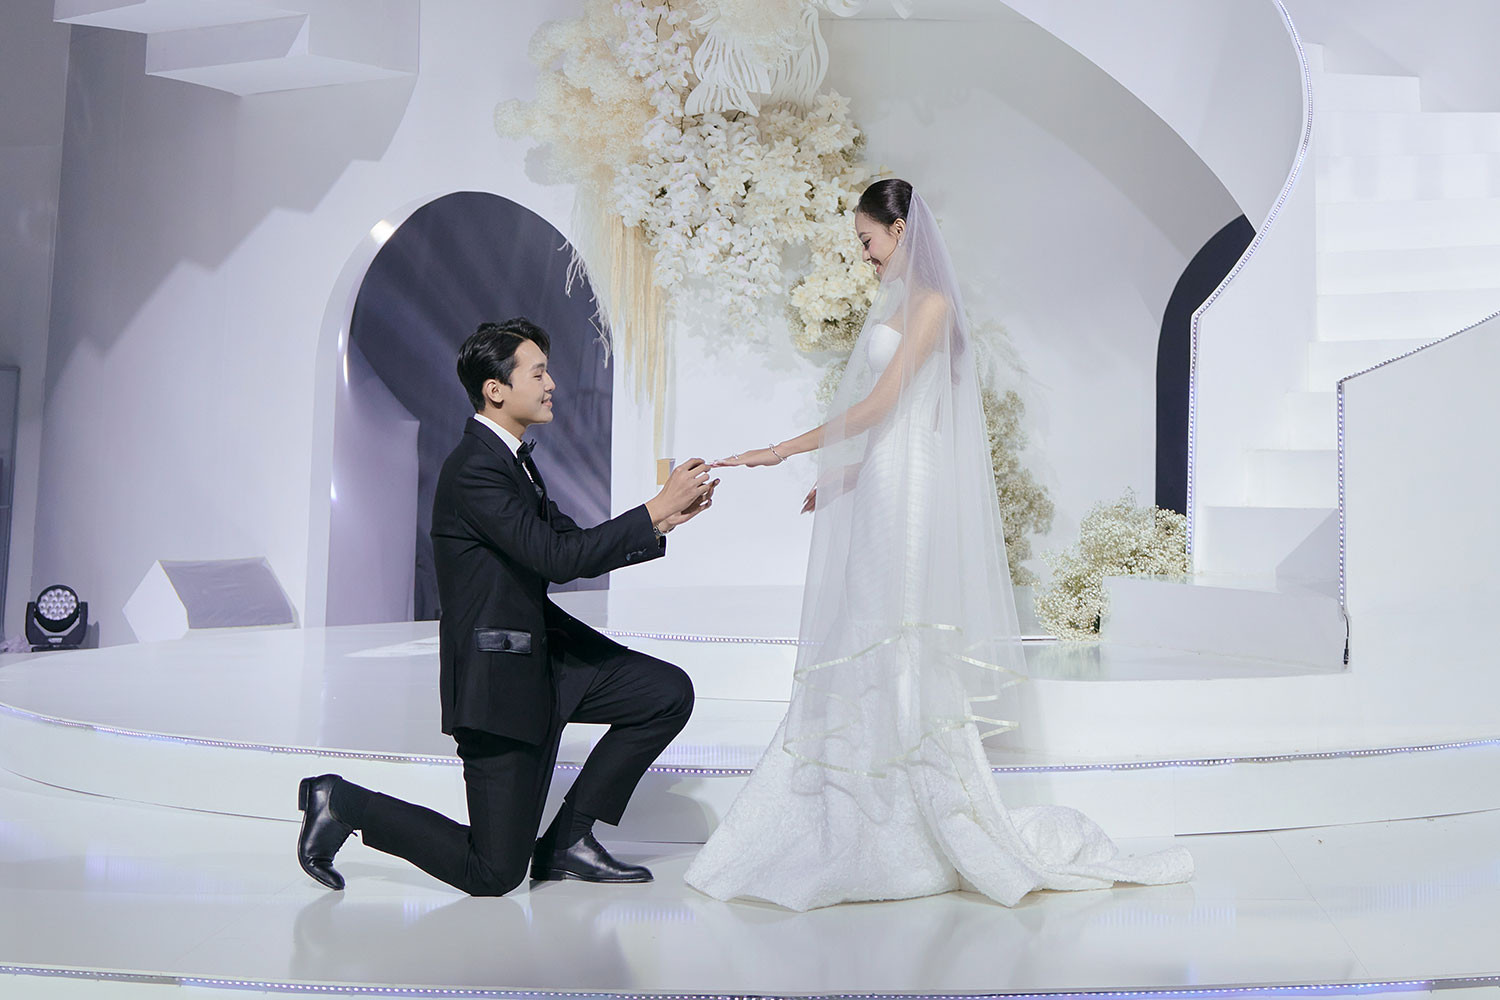 Á hậu Hương Ly tổ chức đám cưới tại sàn diễn thời trang - ảnh 9